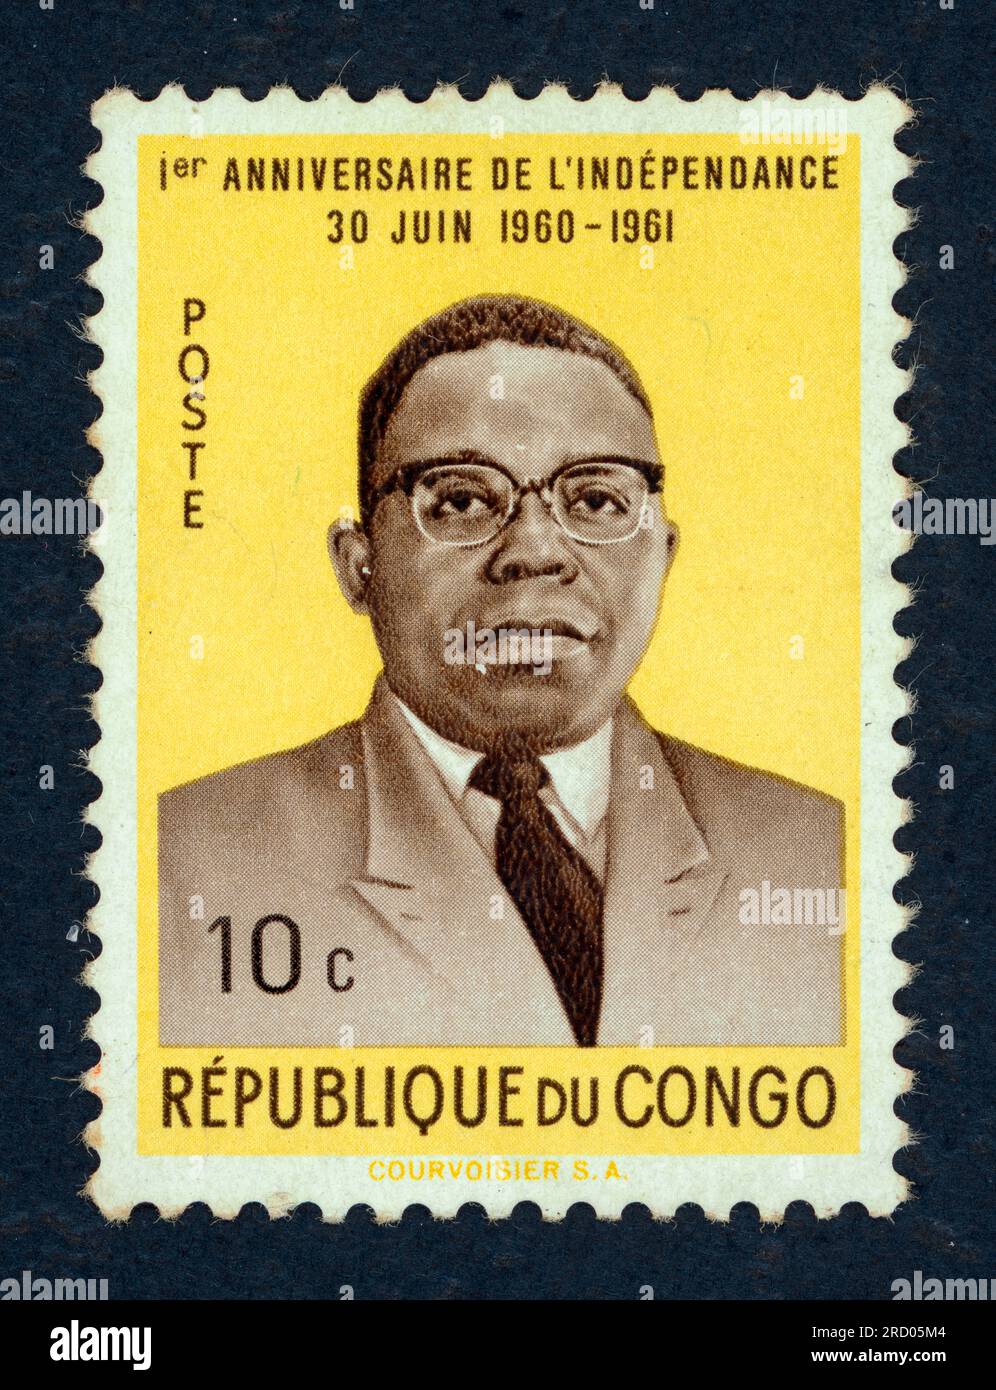 Joseph Kasa-Vubu, ou Joseph Kasavubu, né vers 1915 et mort en 1969, était un homme politique congolais qui fut le premier président de la République démocratique du Congo (alors République du Congo) de 1960 à 1965. Un timbre émis en 1961 en République du Congo à l'occasion du 1er anniversaire de l'indépendance. Valeur faciale : 10 c. Banque D'Images